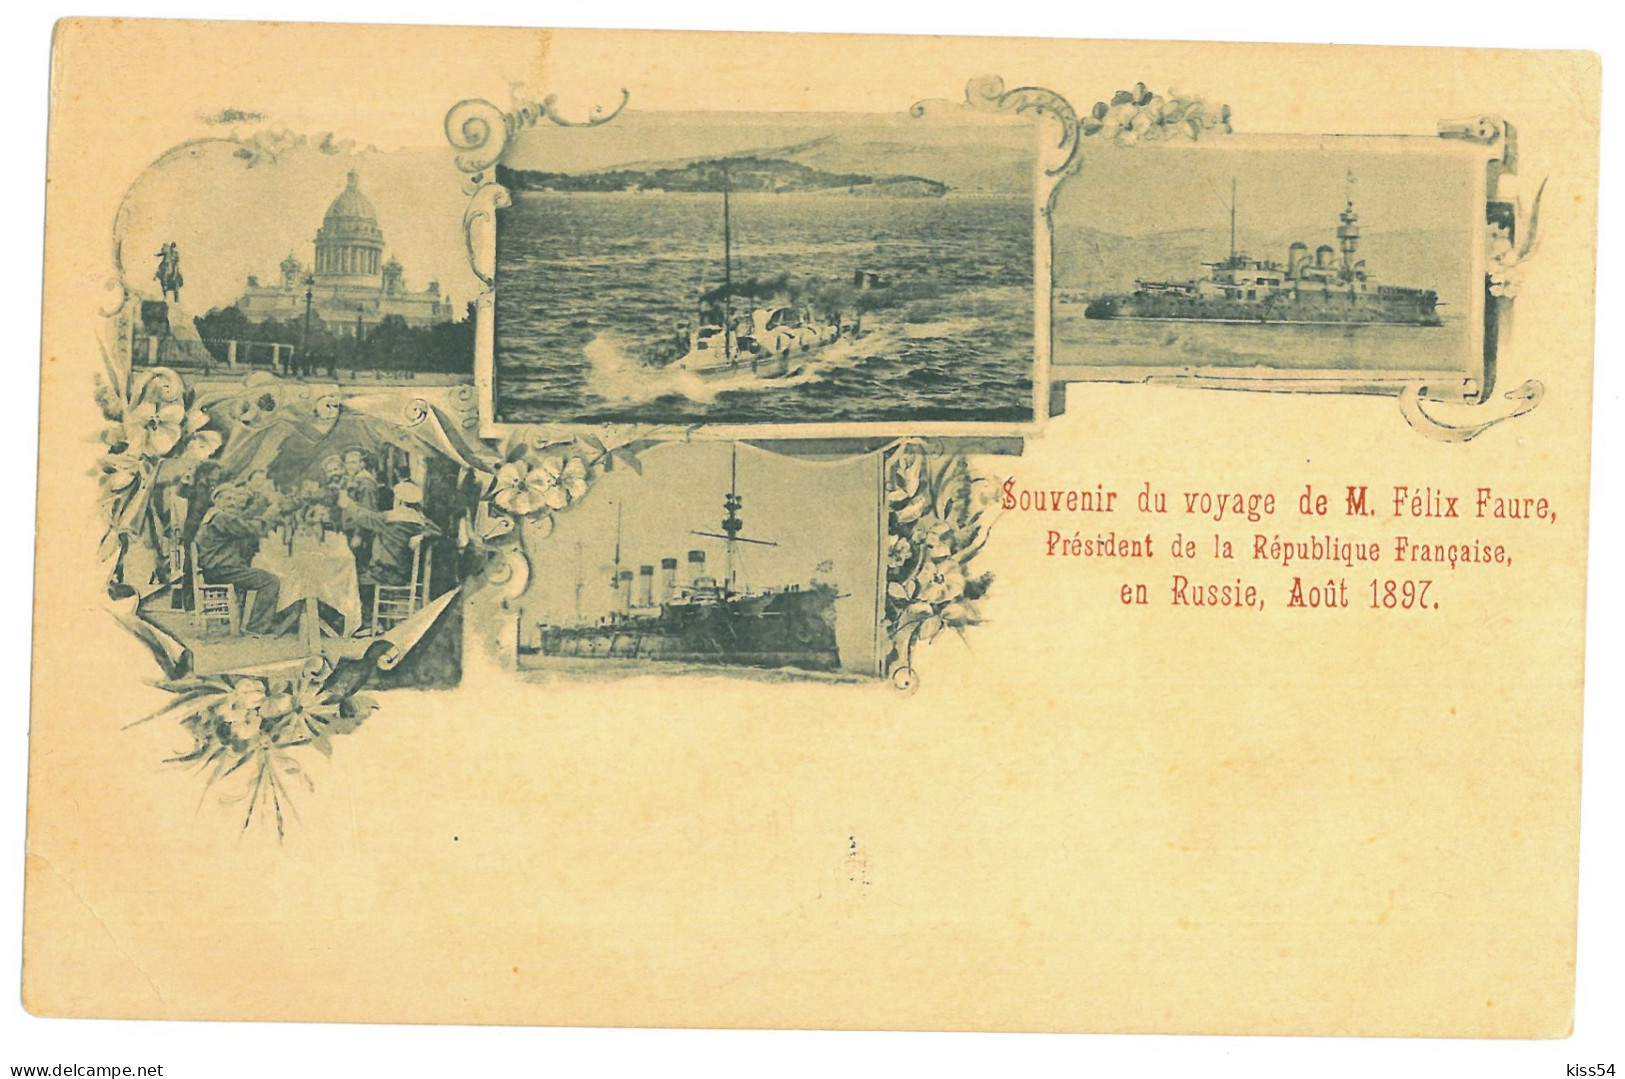 RUS 91 - 21258 SAINT PETERSBURG, Ships, Litho, Russia - Old Postcard - Unused - Rusland